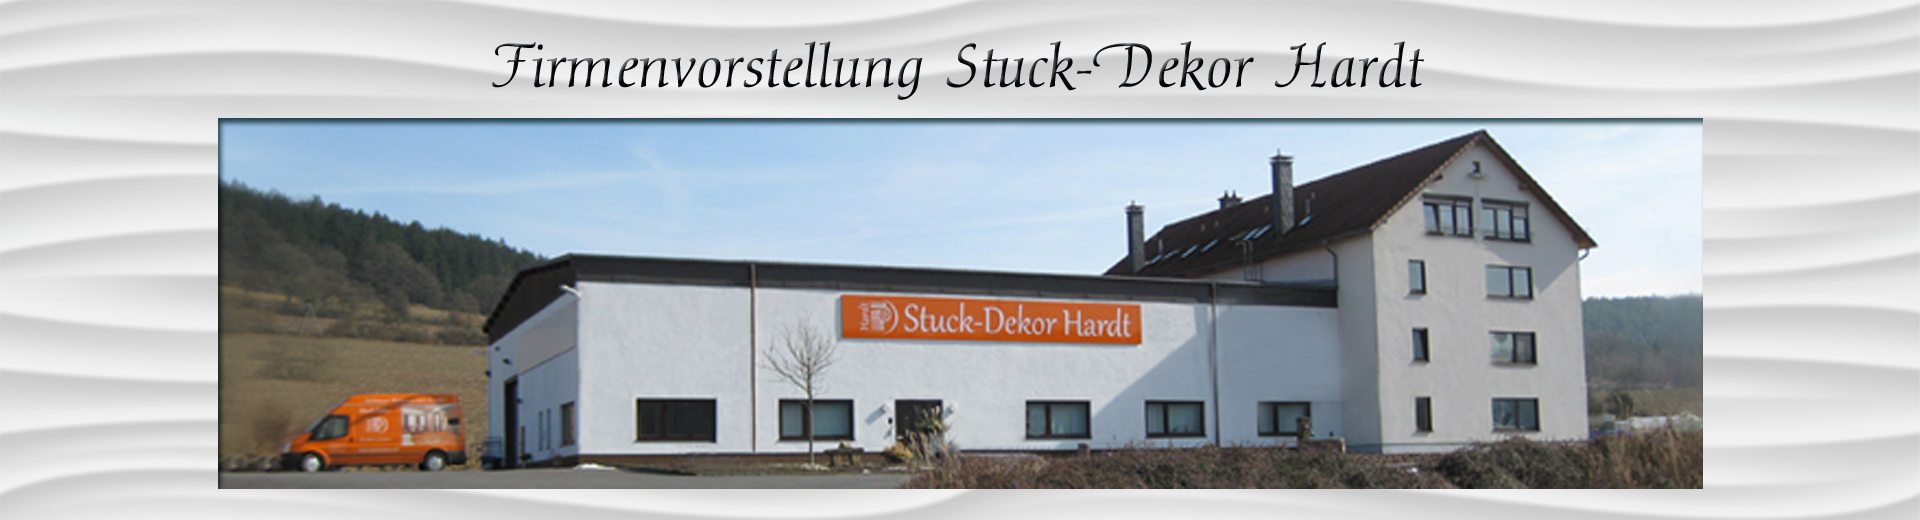 Firmenvorstellung-Stuck-Dekor-Hardt